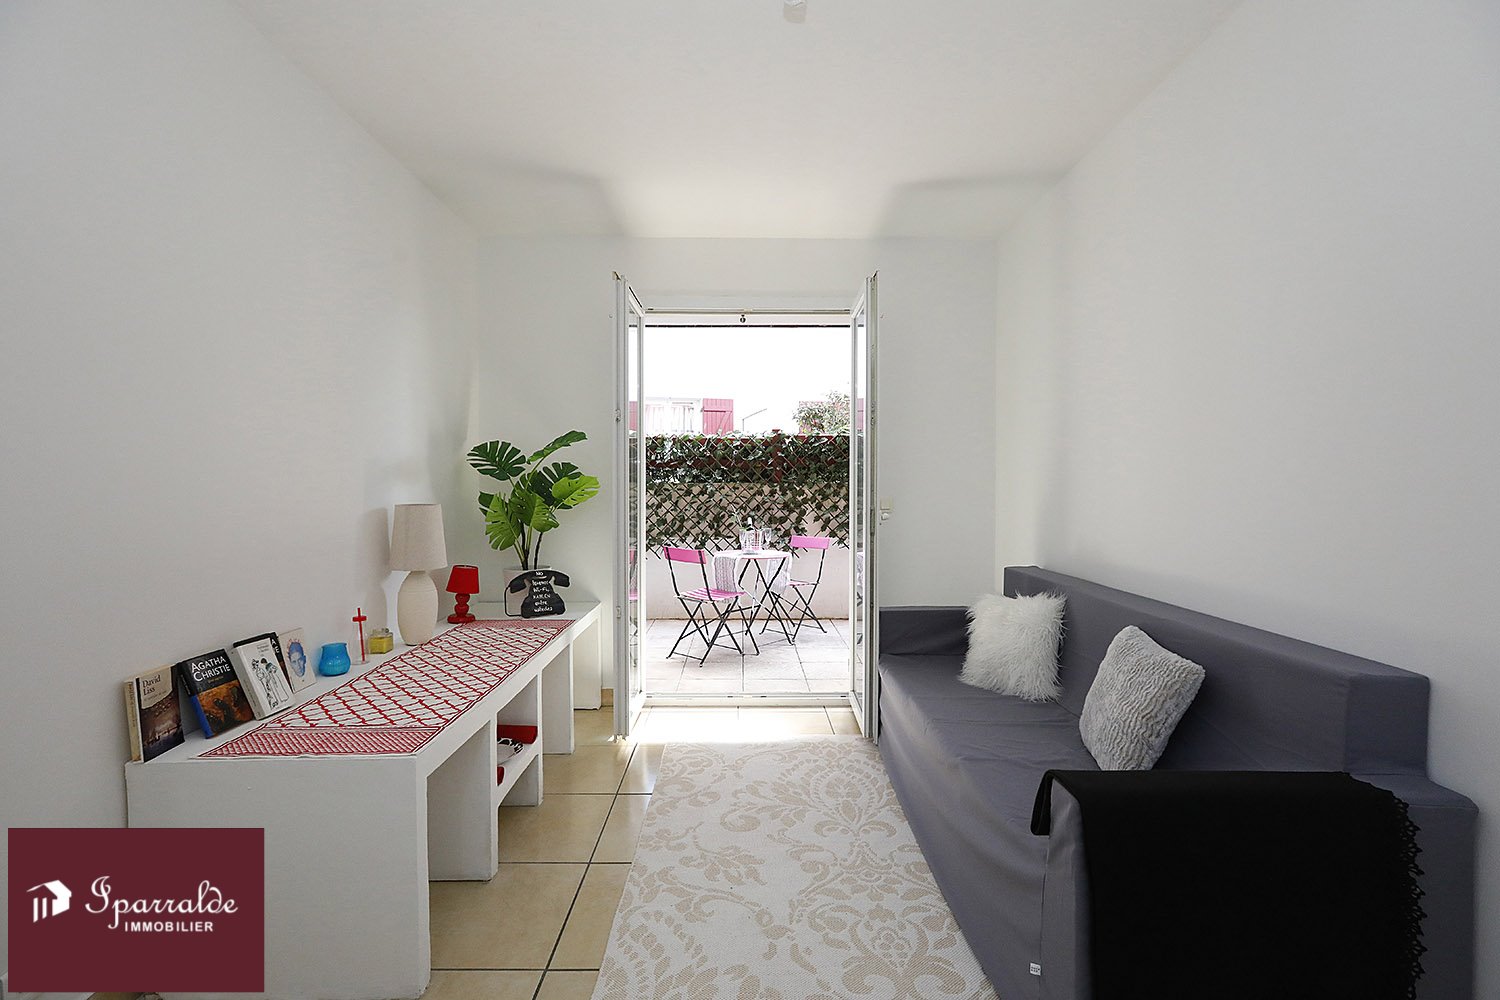 Precioso apartamento con Terraza soleada, Trastero y Parking subterráneo. 